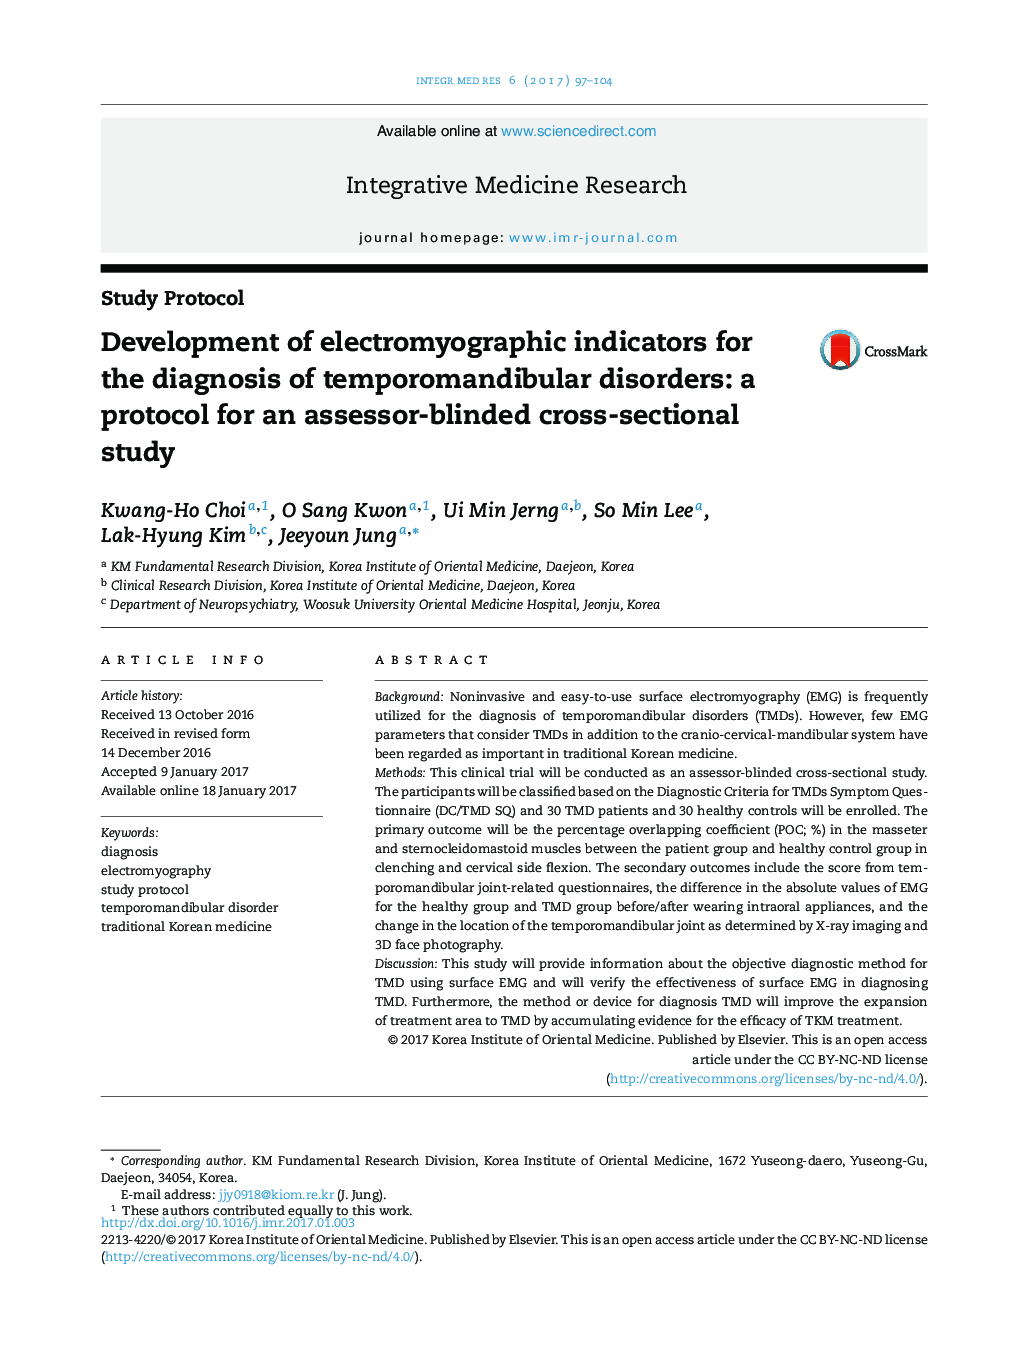 توسعه شاخص های الکترومیوگرافی برای تشخیص اختلالات تمپوروماندیبولار: یک پروتکل برای یک مطالعه مقطعی- ارزشیابی کورس 